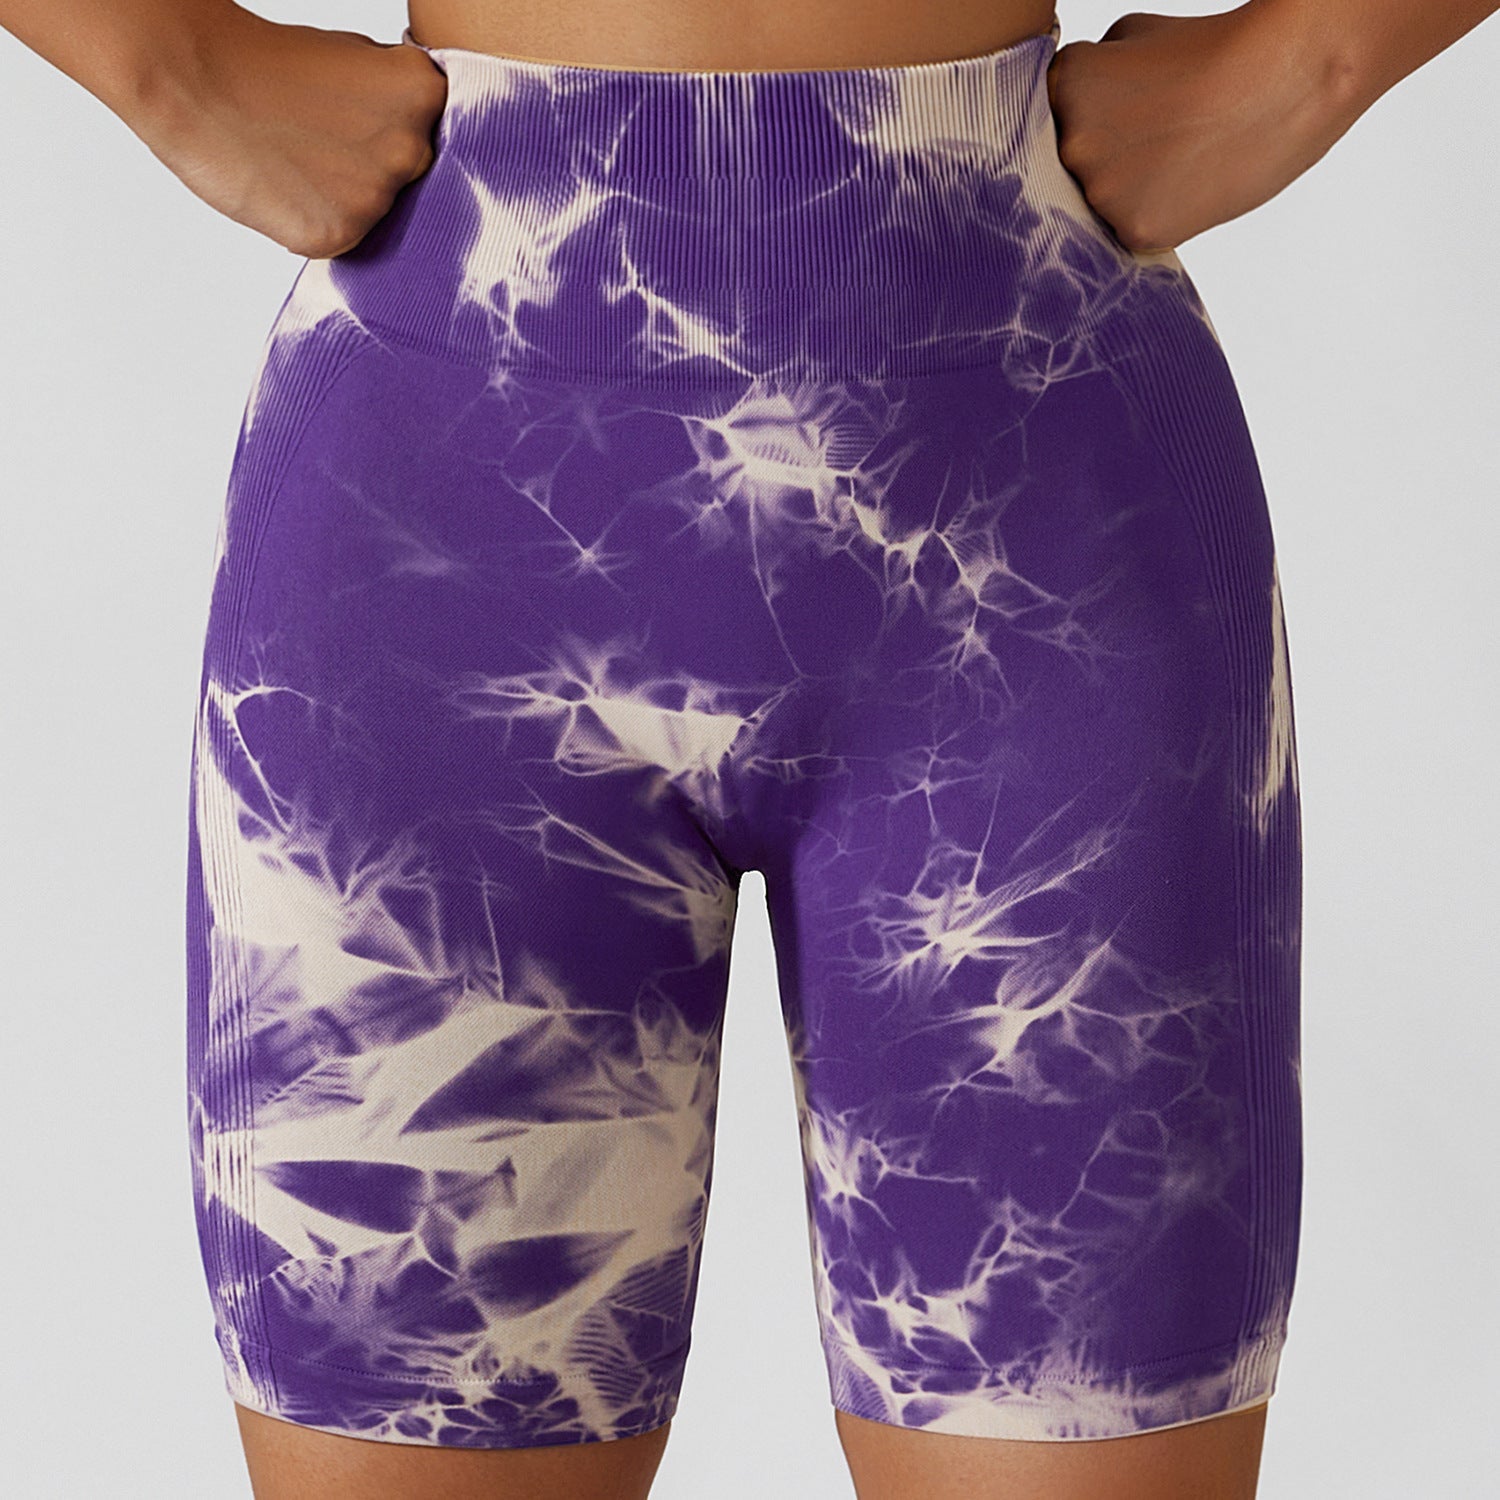 Wholesale Tie Dye Gym Shorts